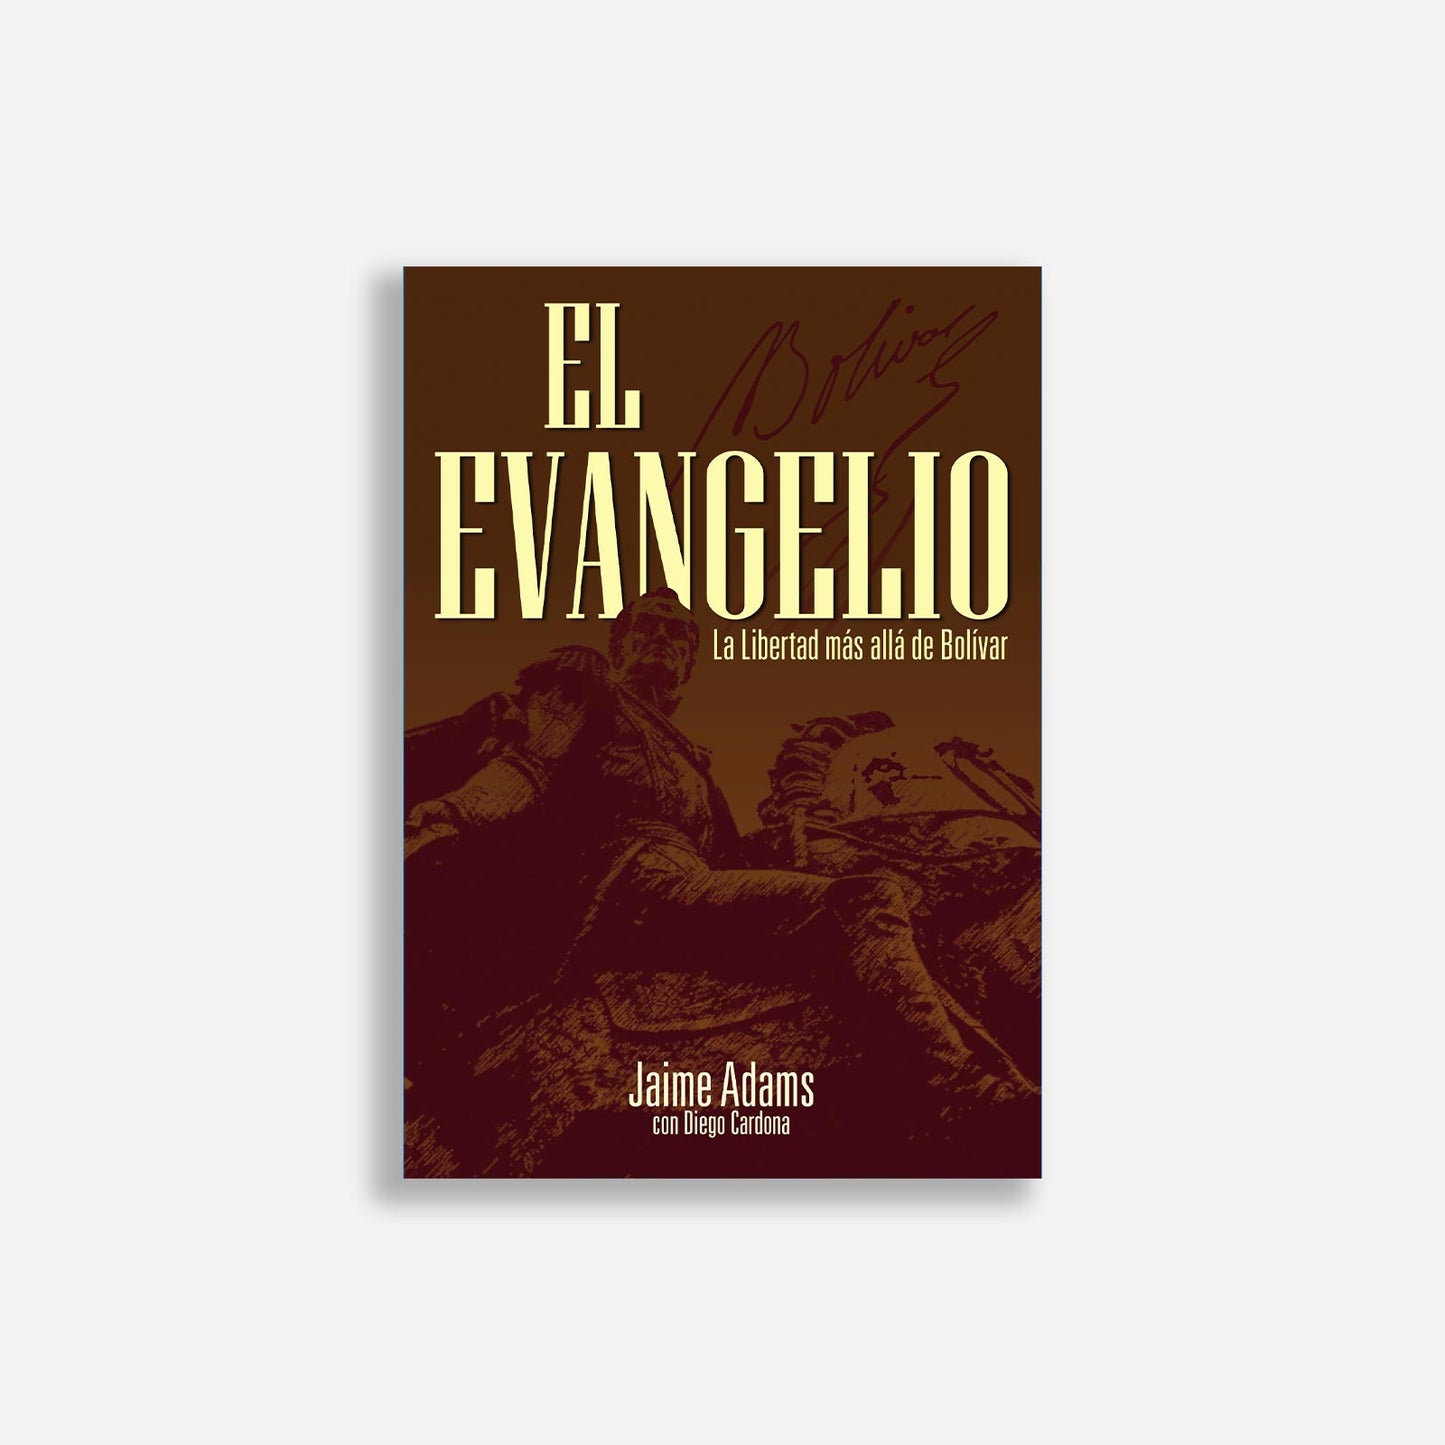 El evangelio: la libertad más allá de Bolívar